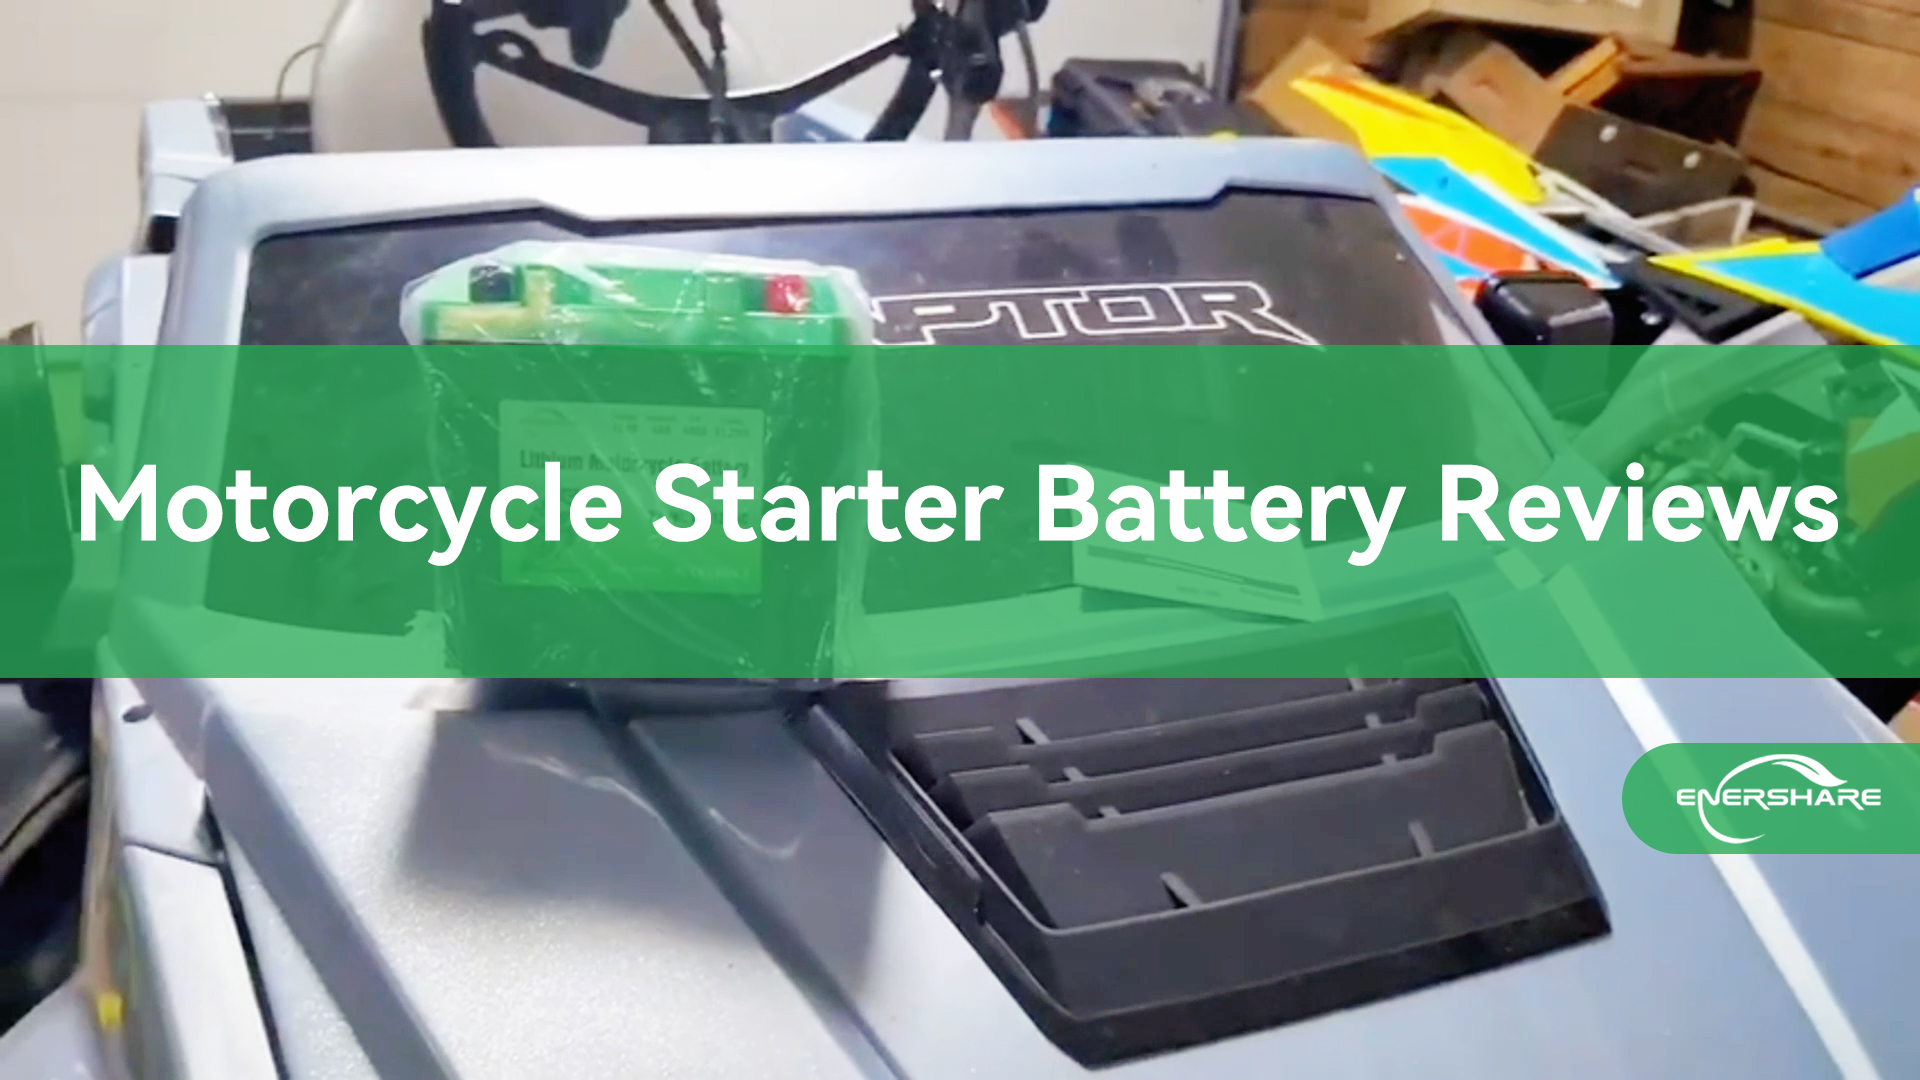 LifePo4 मोटरसाइकिल के लिए मापा गया बैटरी बी शुरू